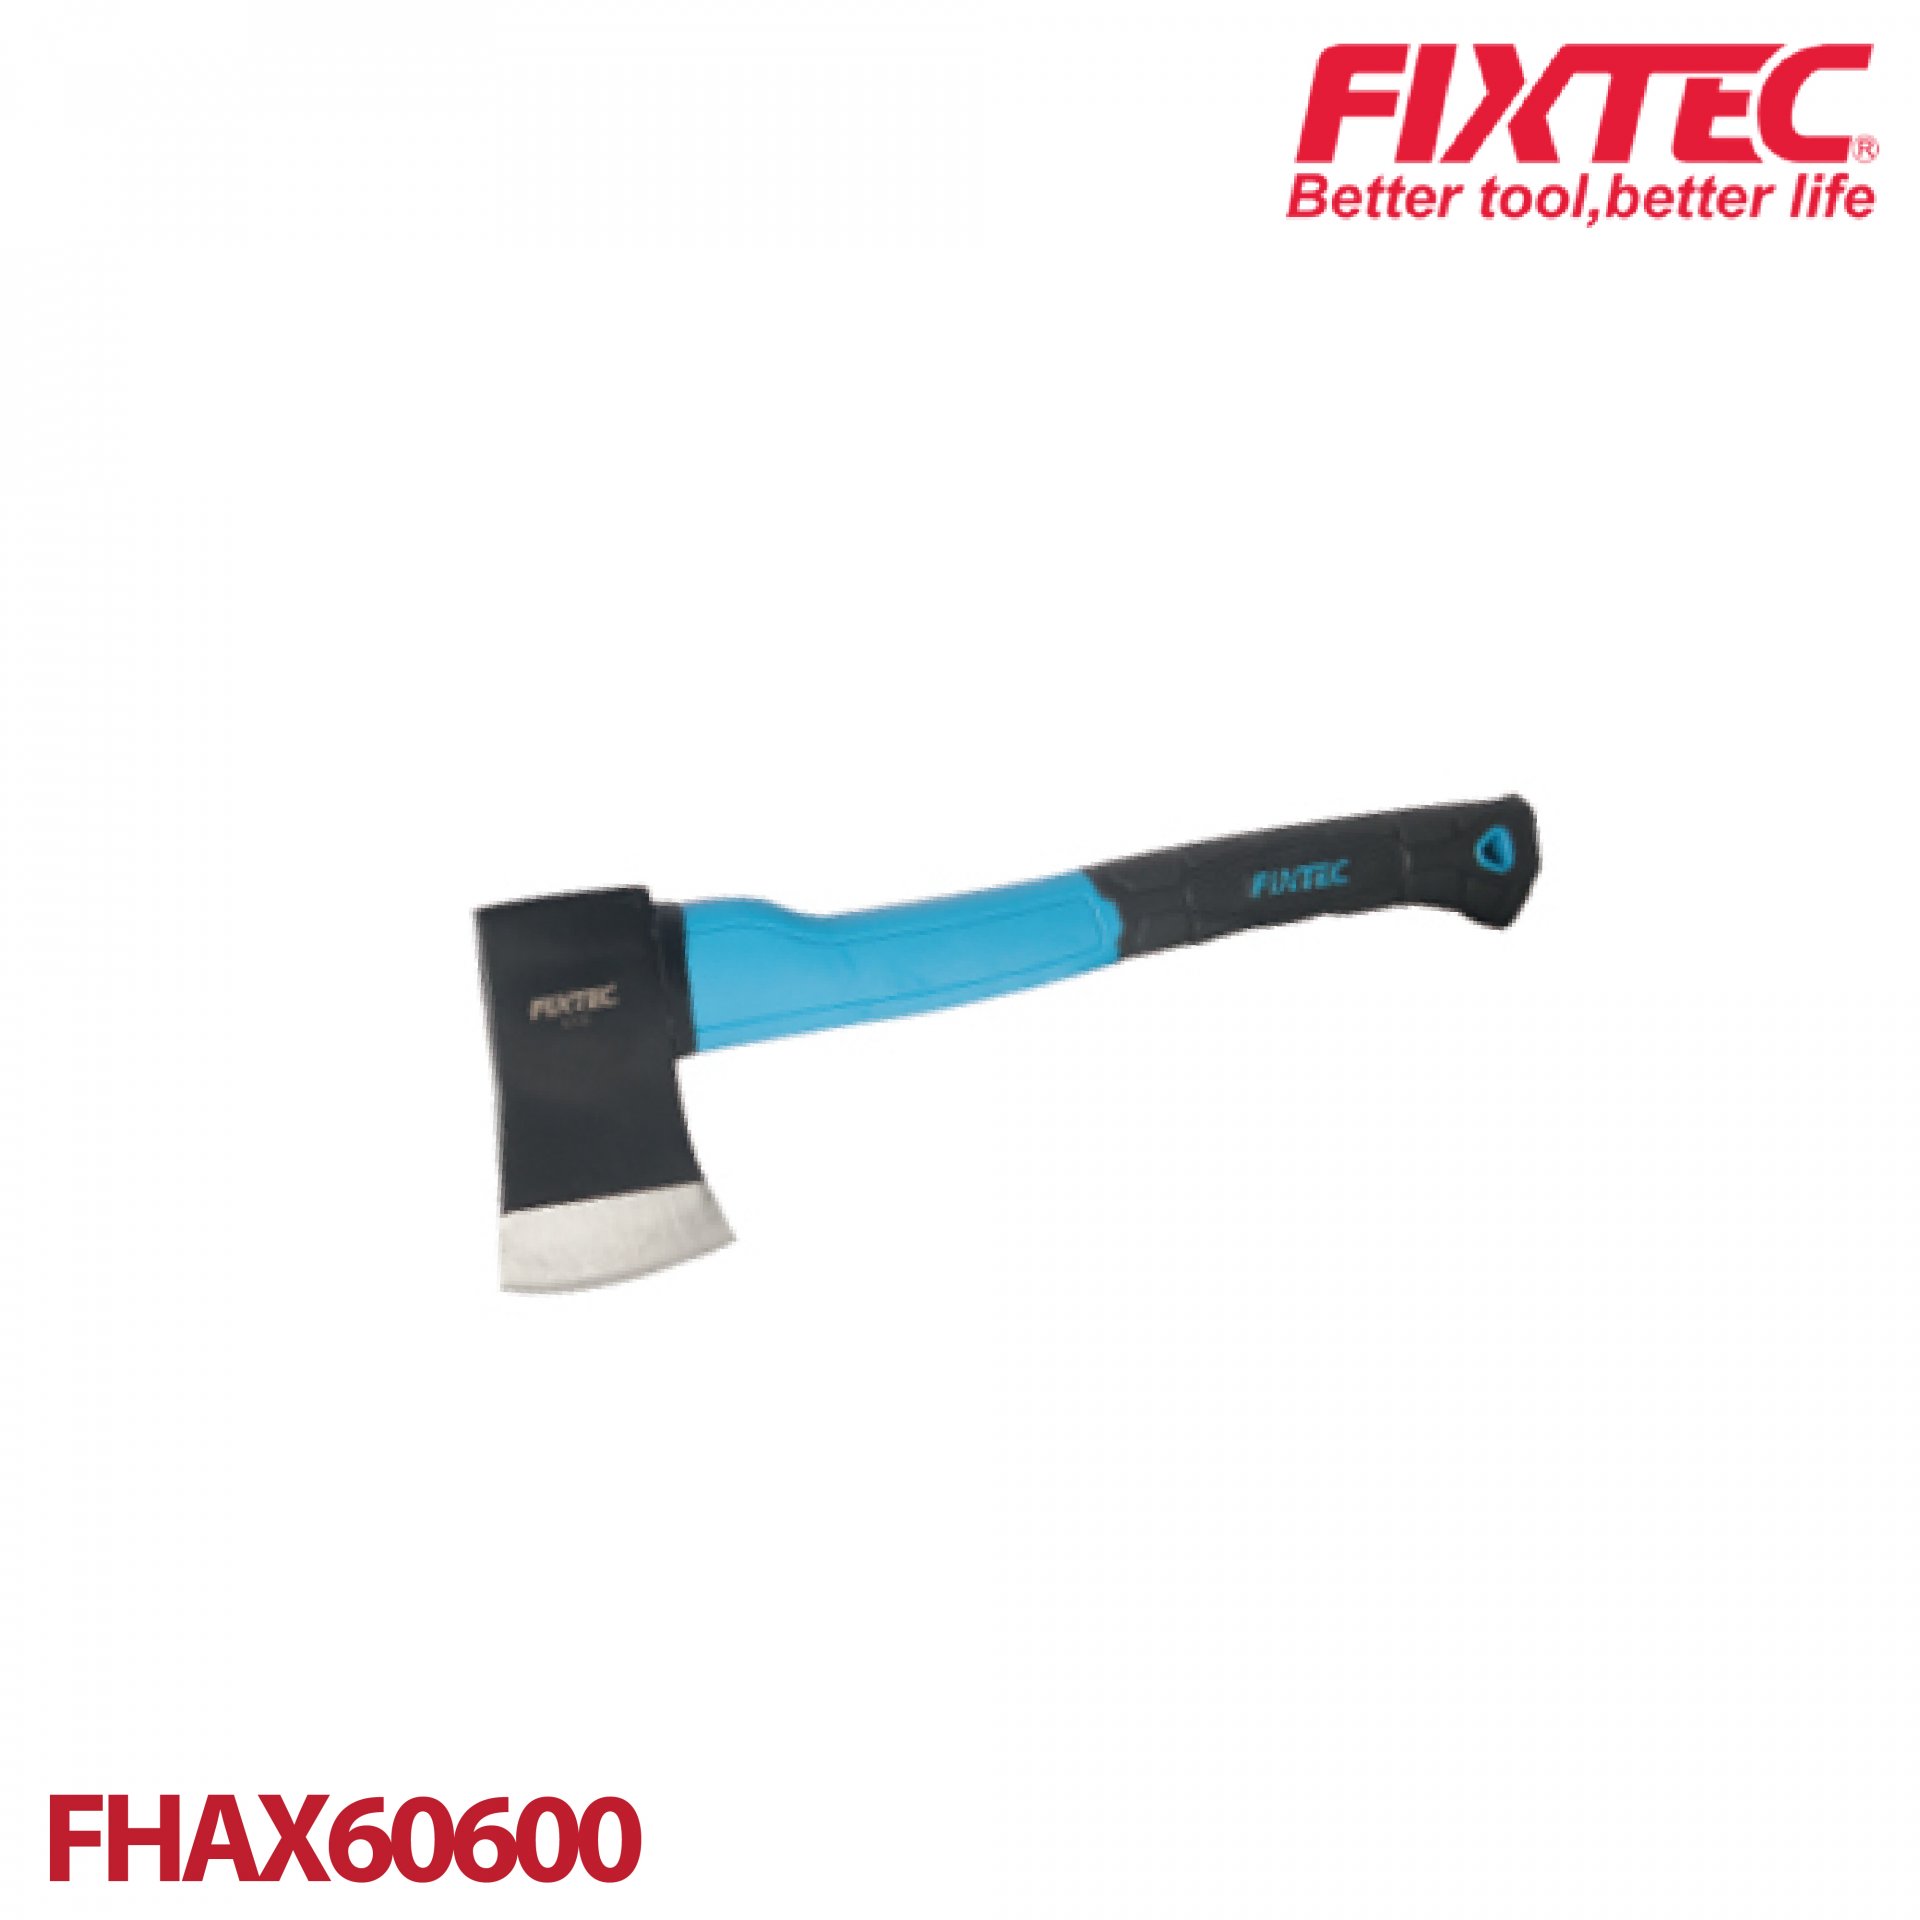 ขวาน ด้ามไฟเบอร์ 600 กรัม FIXTEC FHAX60600